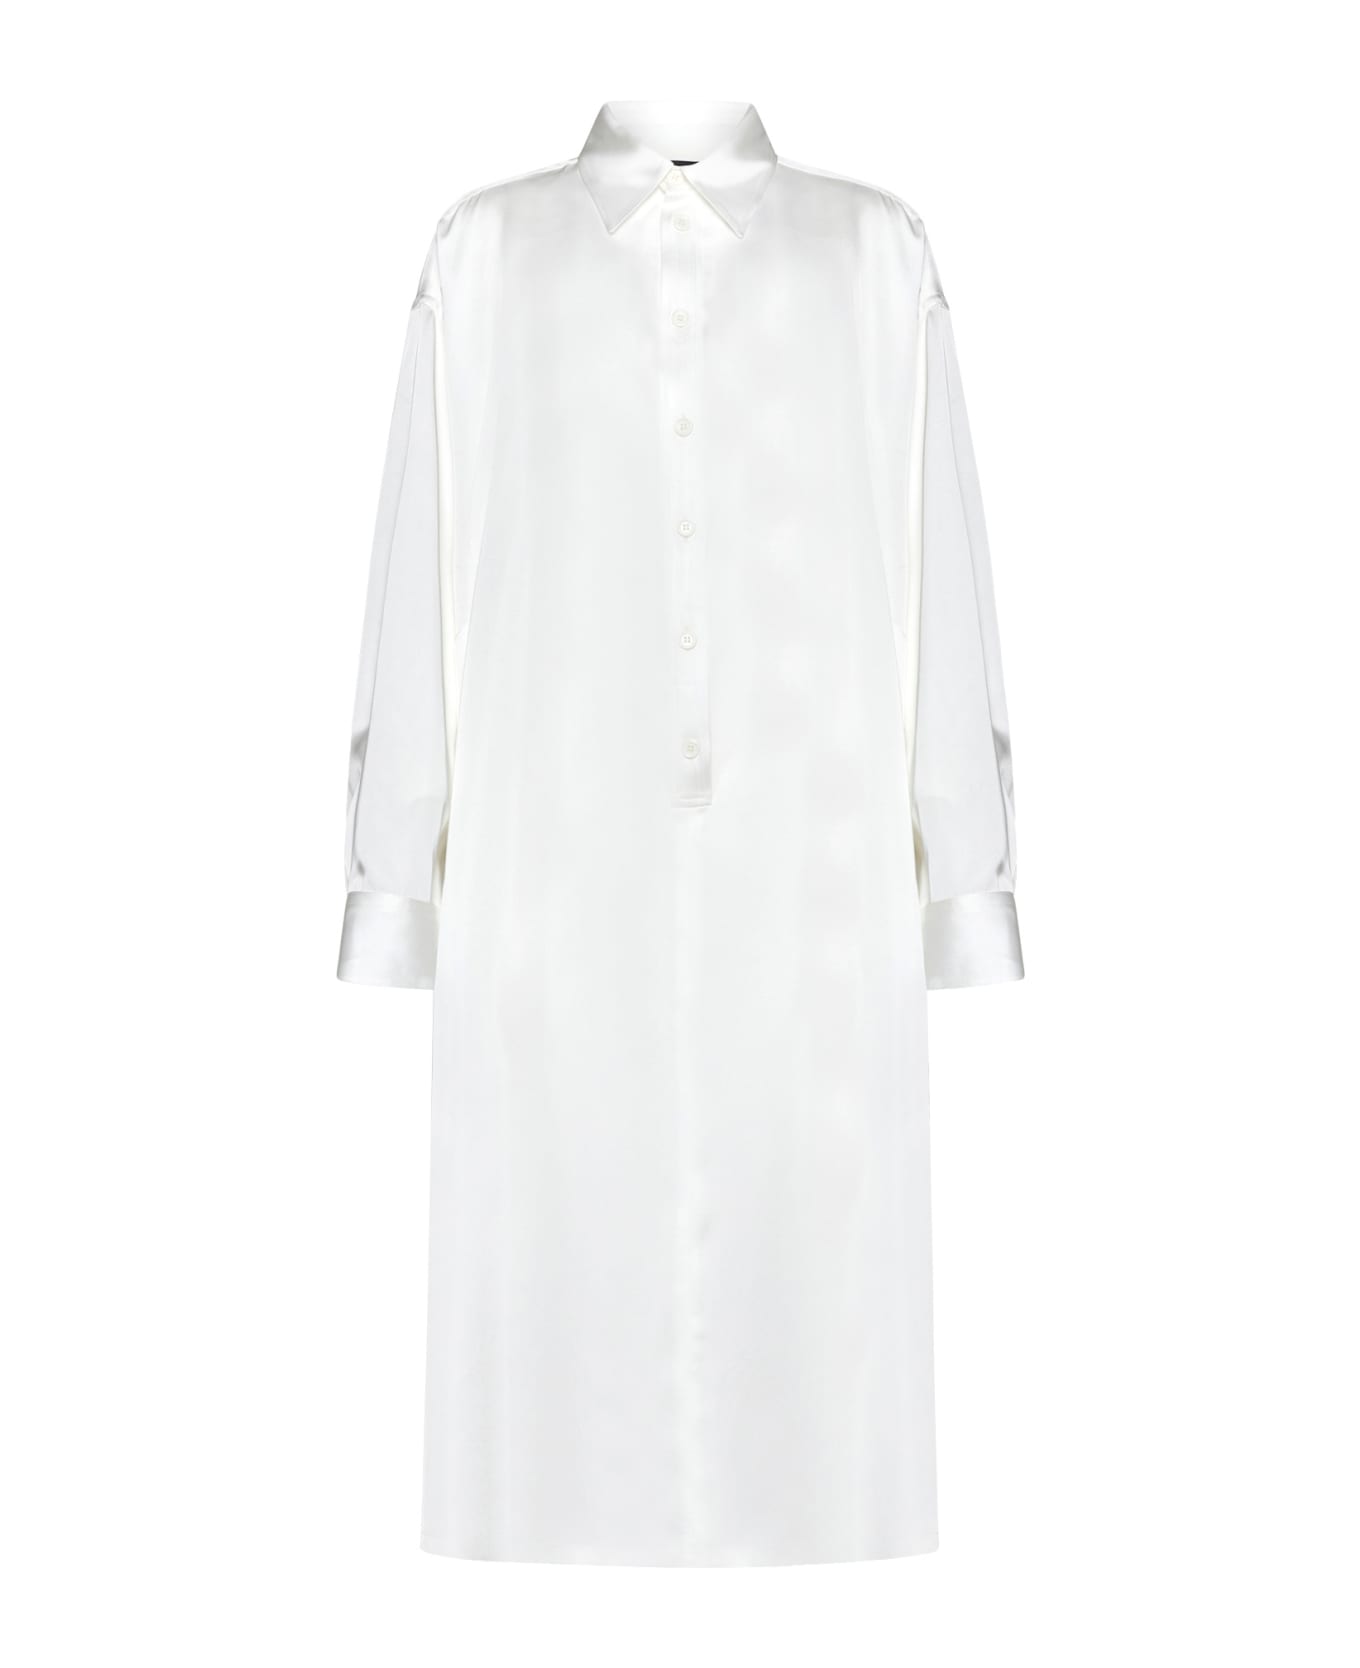 Fabiana Filippi Dress - White